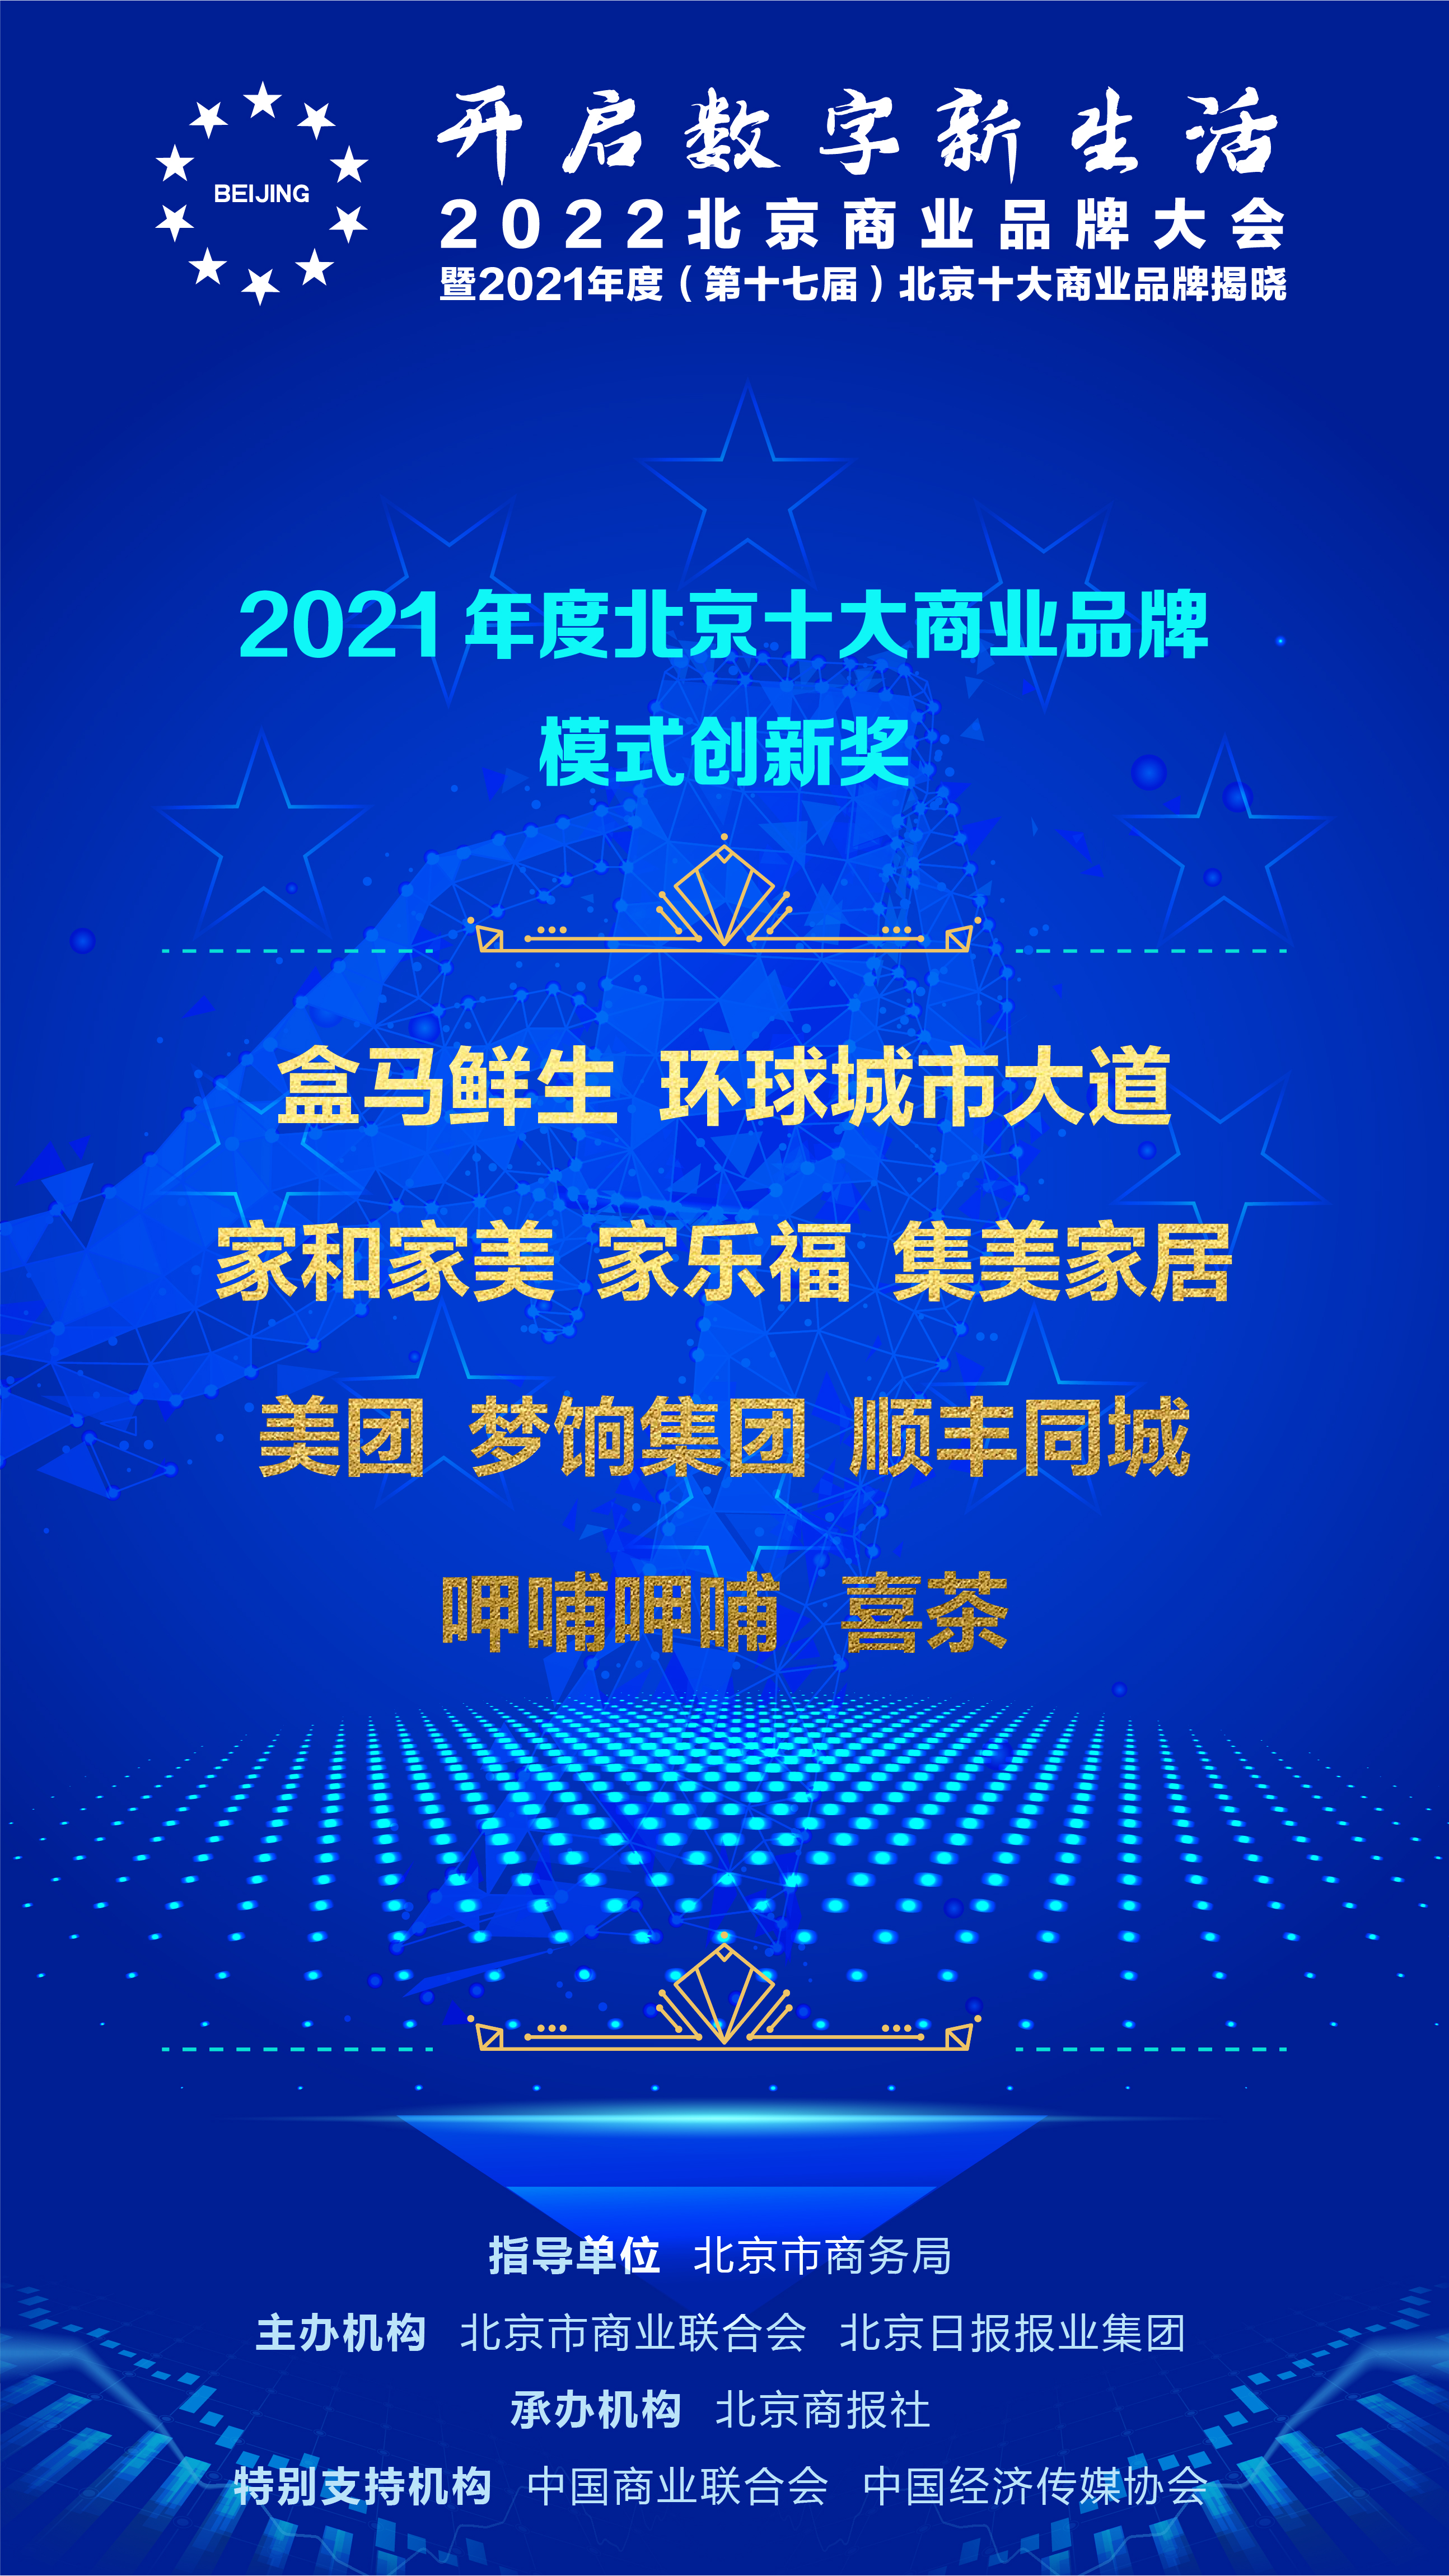 刚刚｜集美家居荣获2021年度北京十大商业品牌模式创新奖